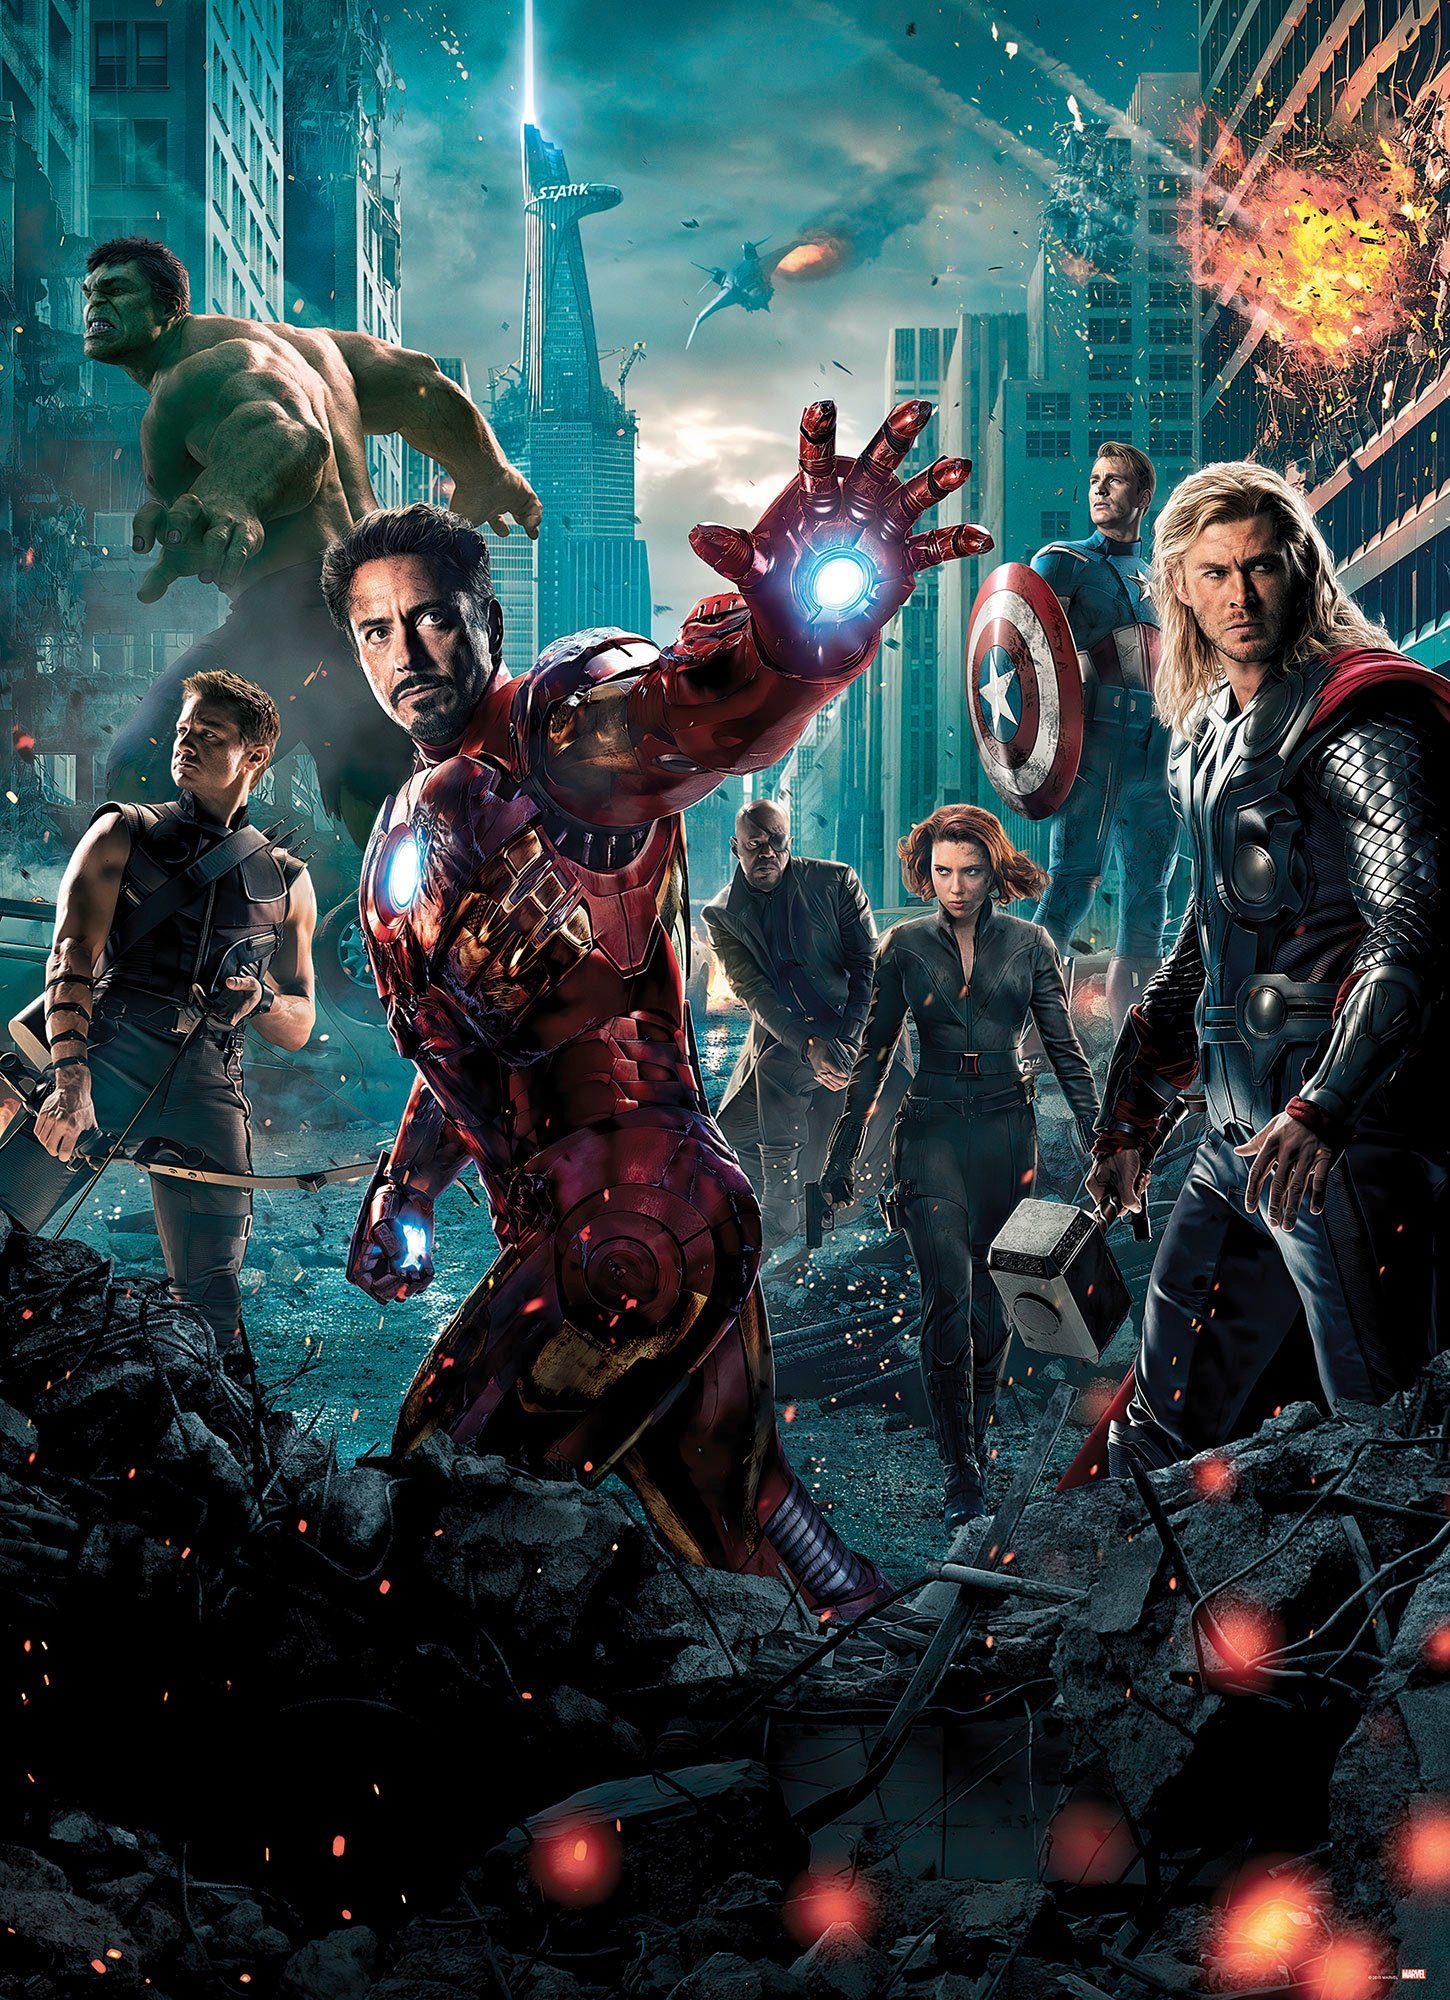 Komar Fototapete Avengers Movie Poster, (1 St), 184x254 cm (Breite x Höhe), inklusive Kleister